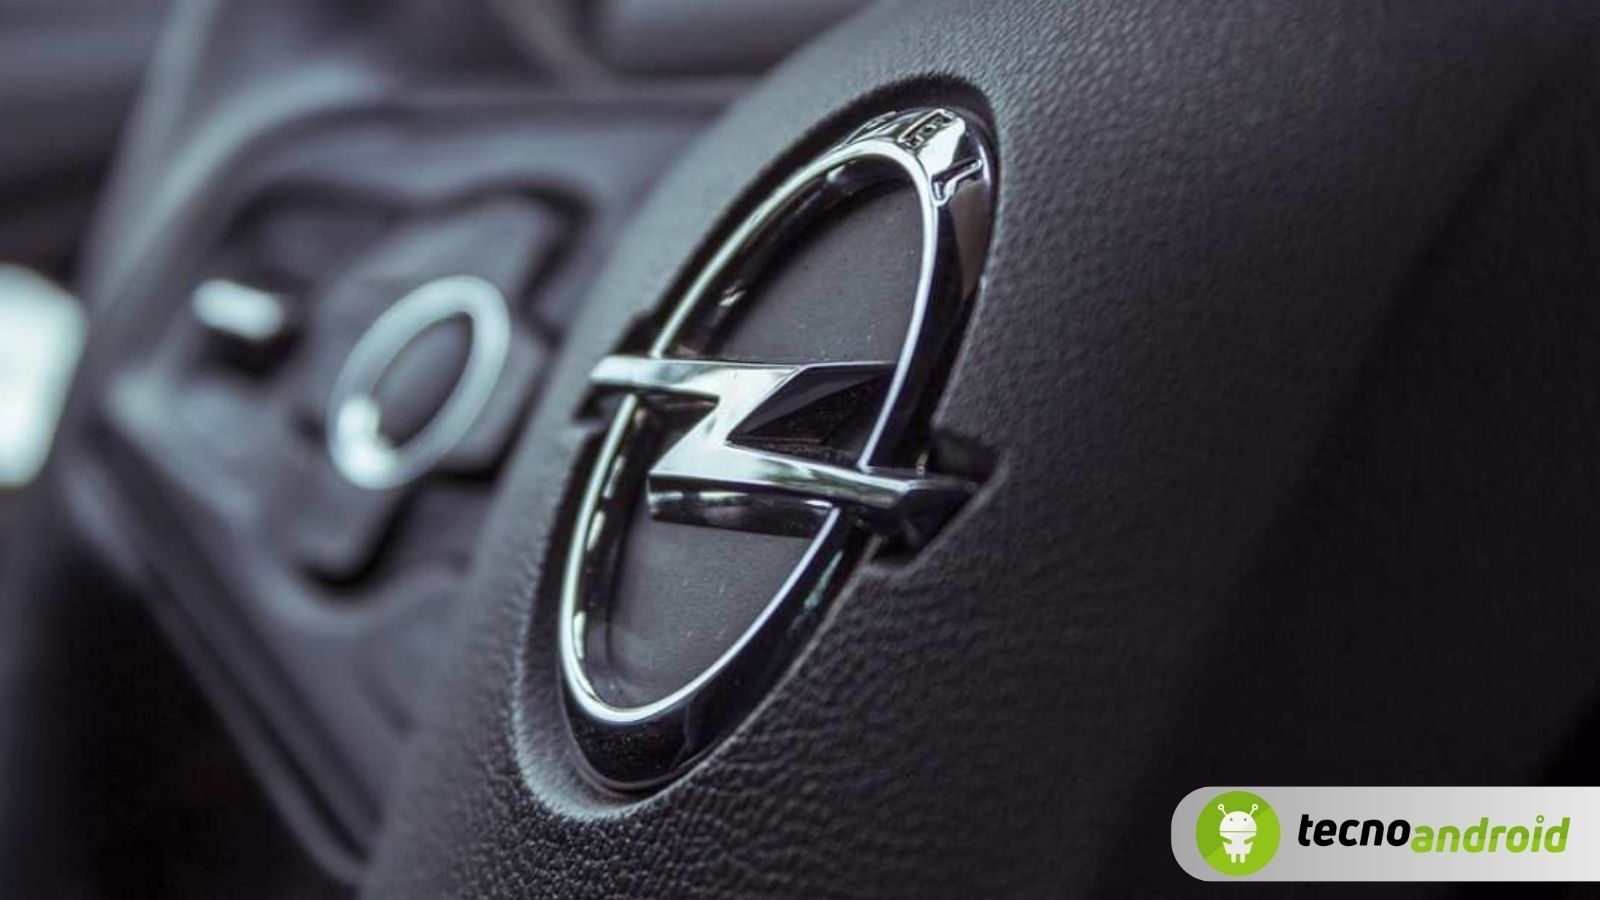 Opel nuova auto elettrica economica